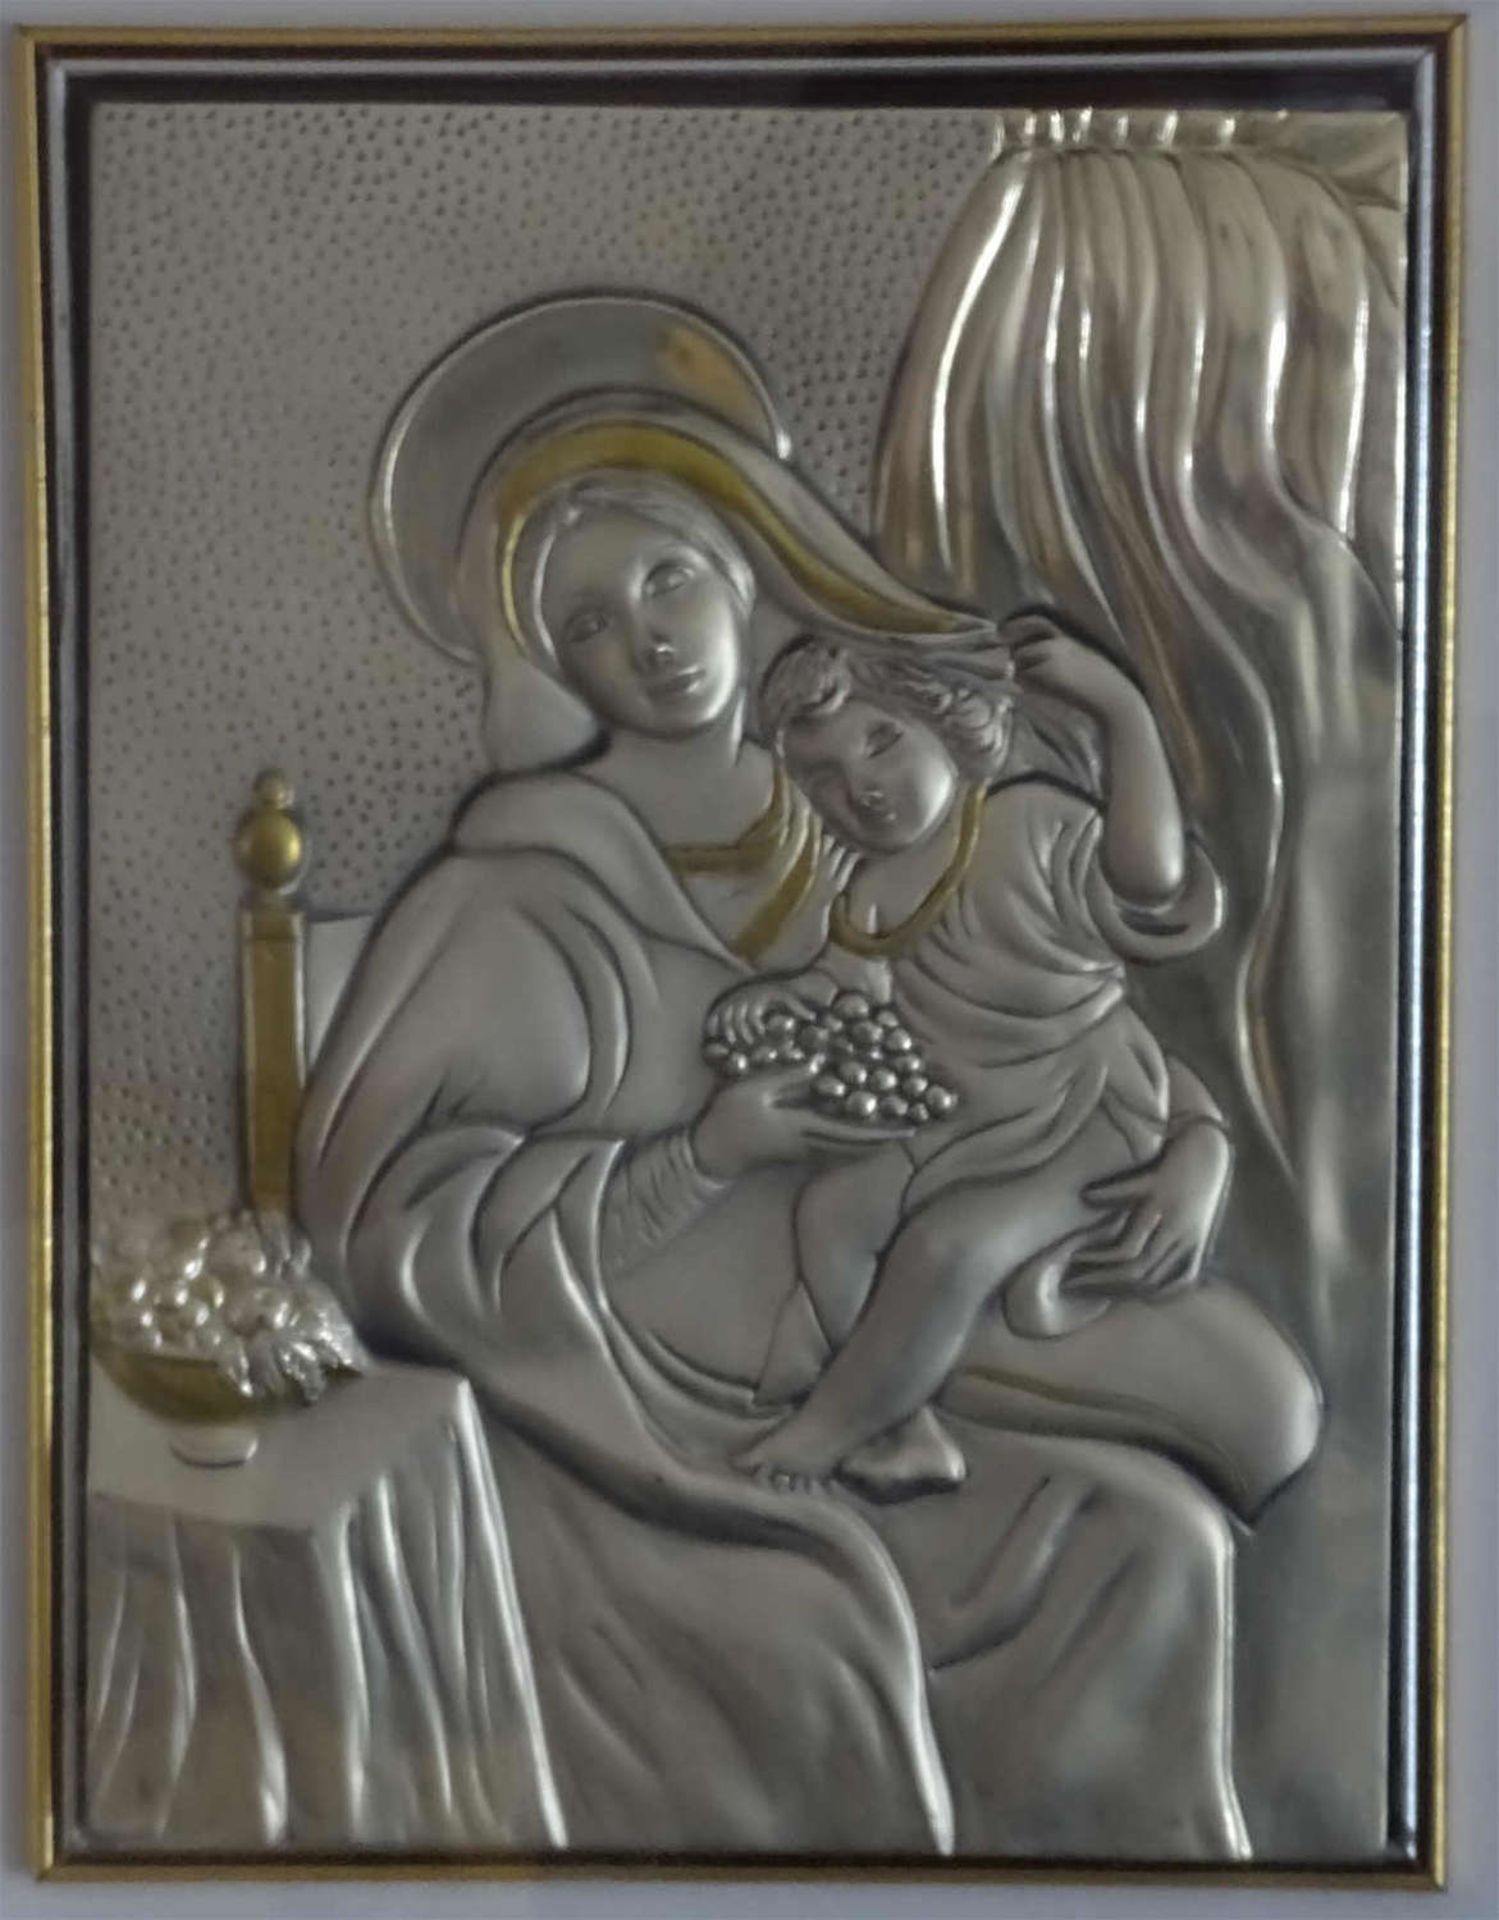 Silberblechbild "Maria mit Jesuskind", große Ausführung, 925er Punze. Chevik Italien, hinter Glas - Bild 2 aus 2